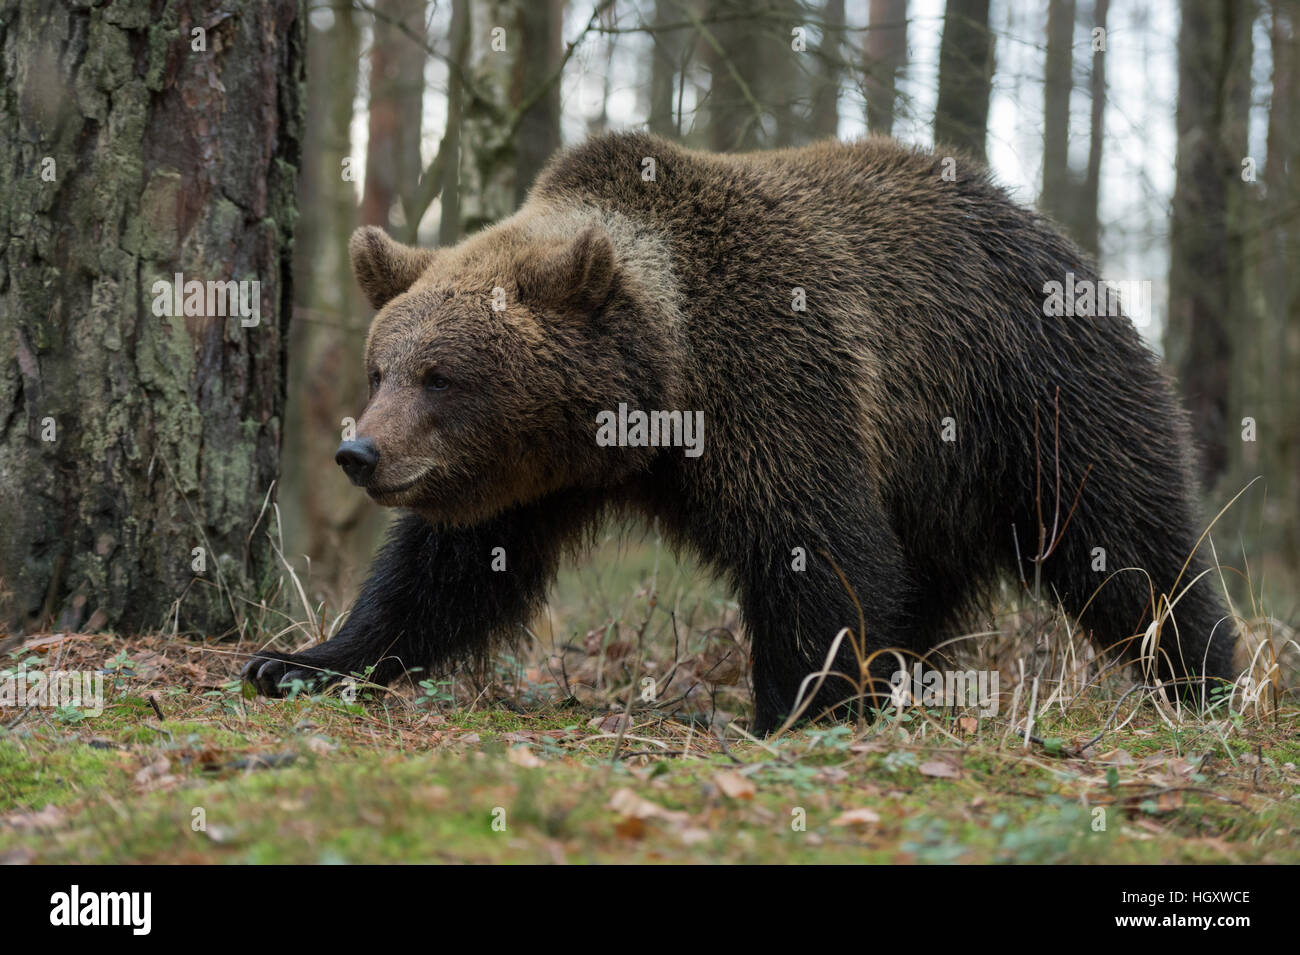 Ours brun européen / Braunbaer ( Ursus arctos ) marche à travers une forêt naturelle, détaillée vue latérale, en pose typique, forte. Banque D'Images